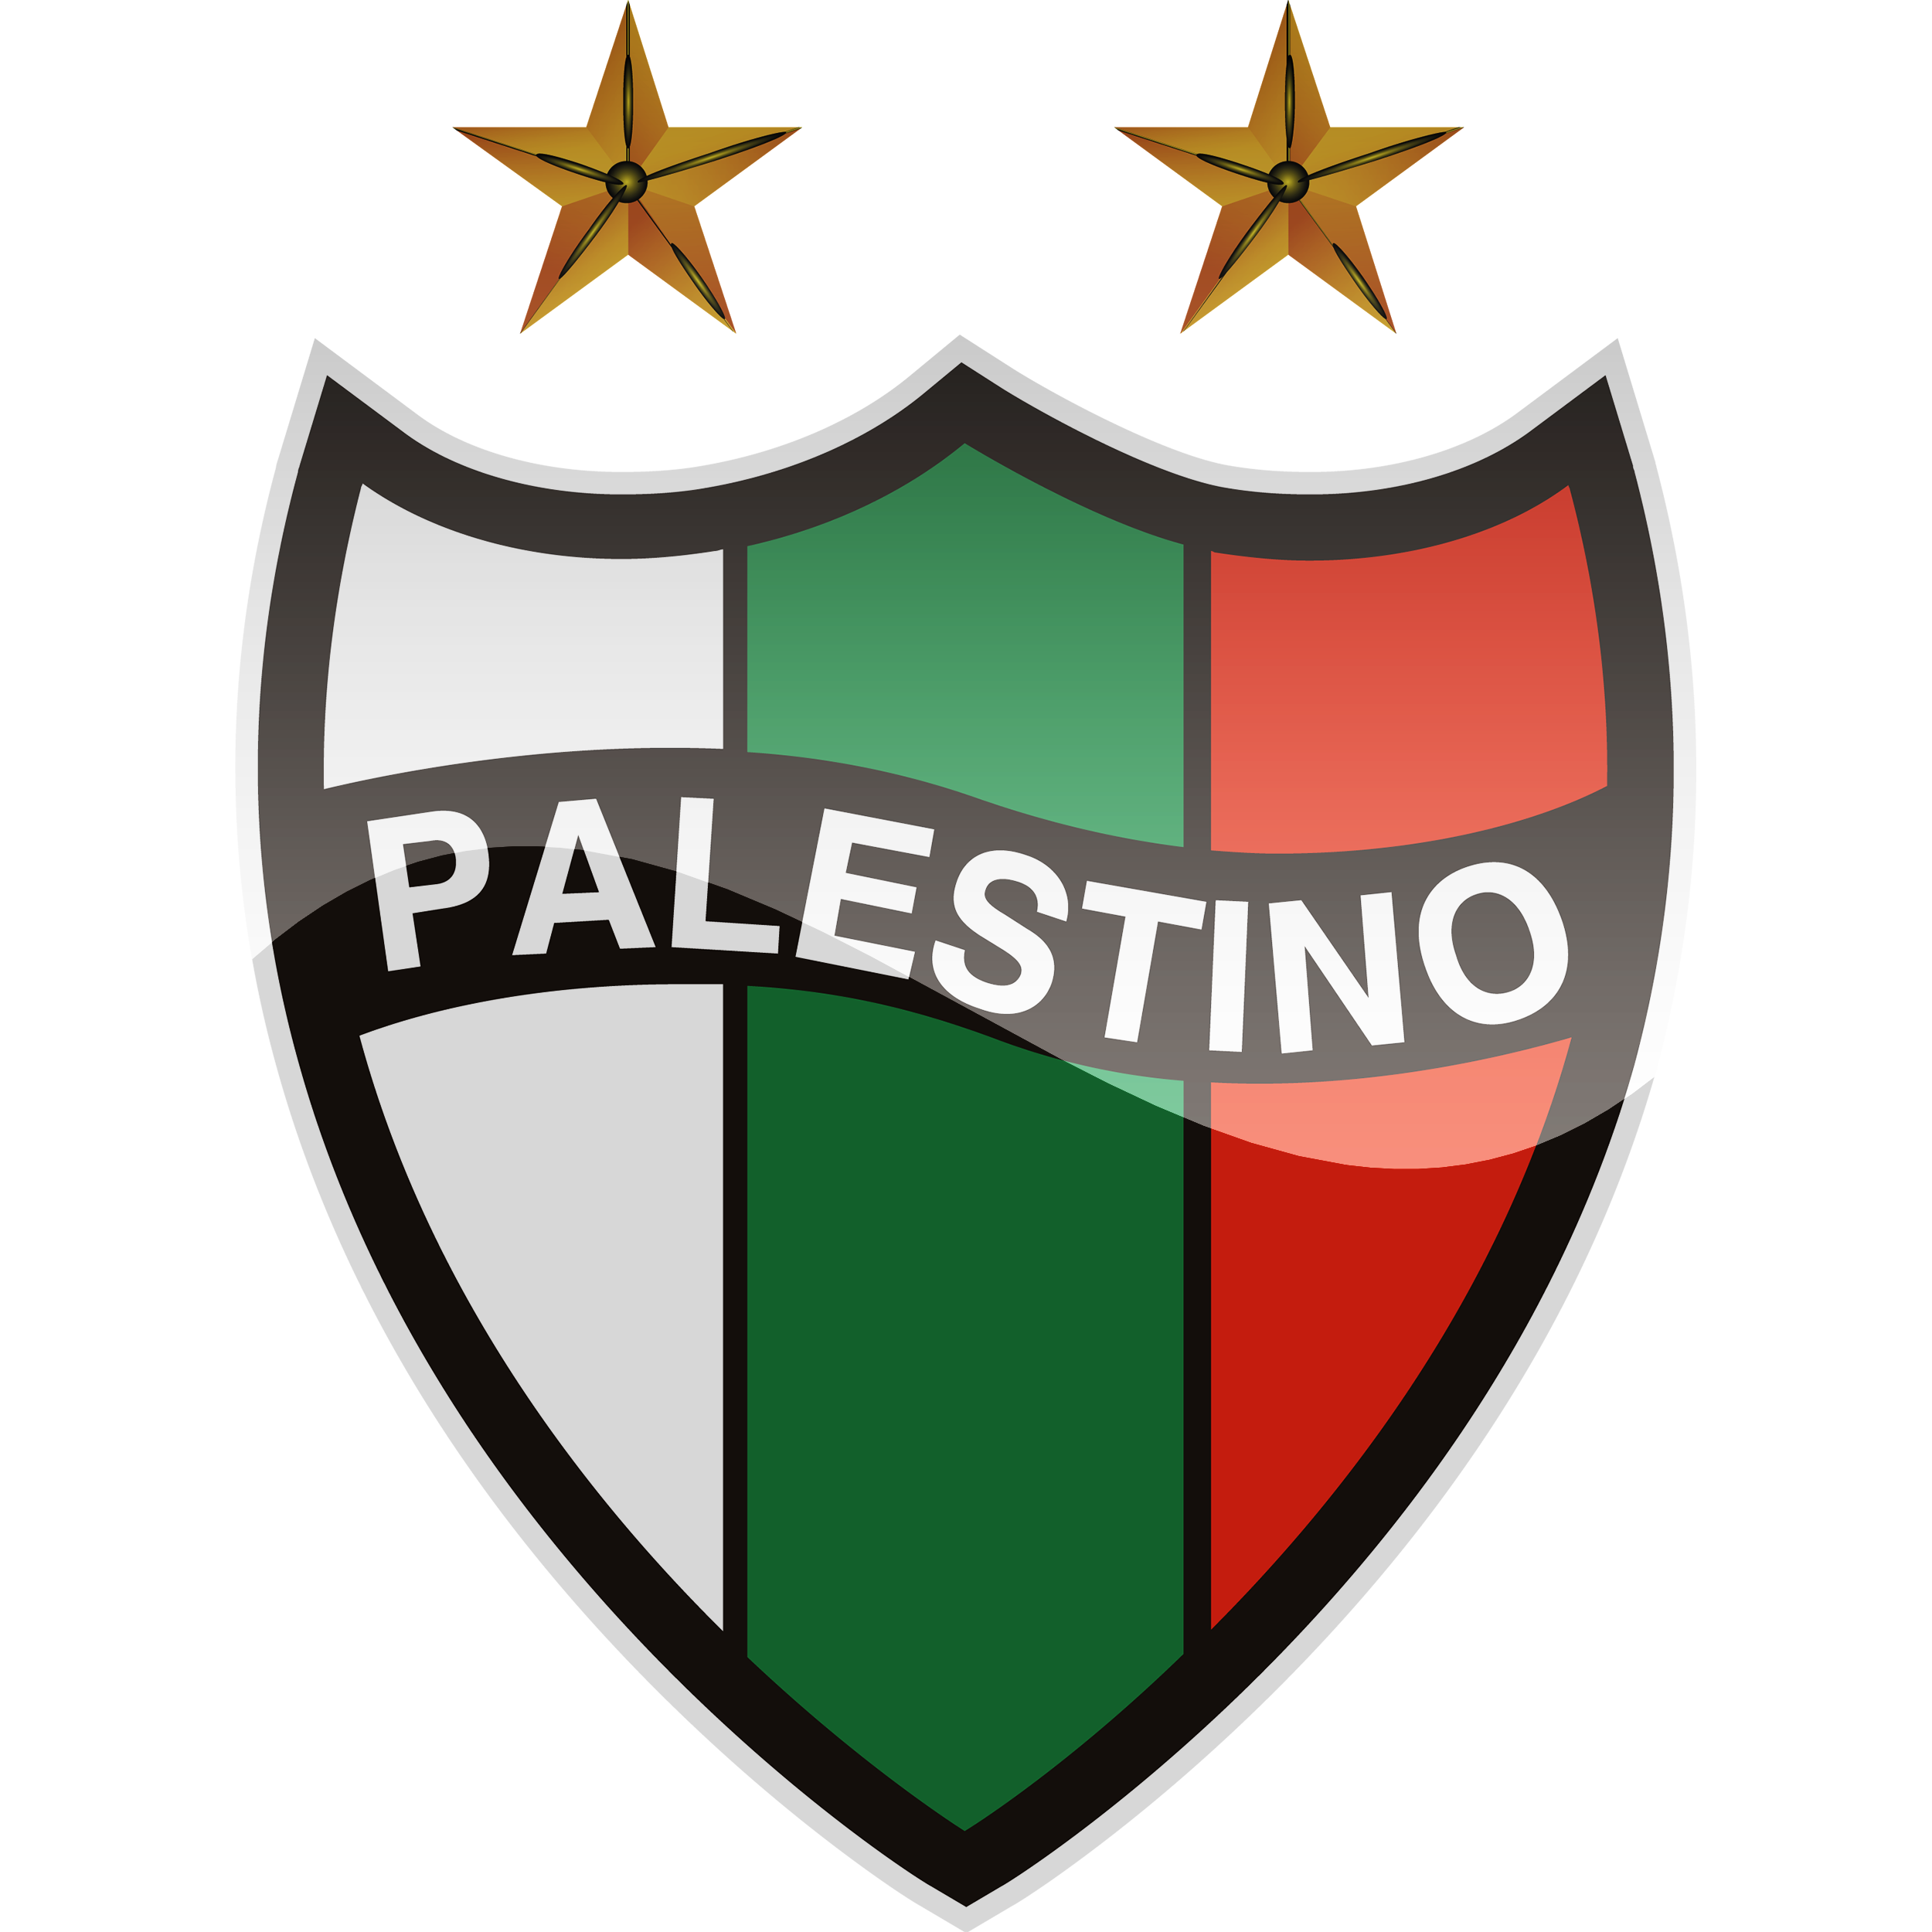 Palestino vs Copiapó Prediction: Can the away team escape relegated?